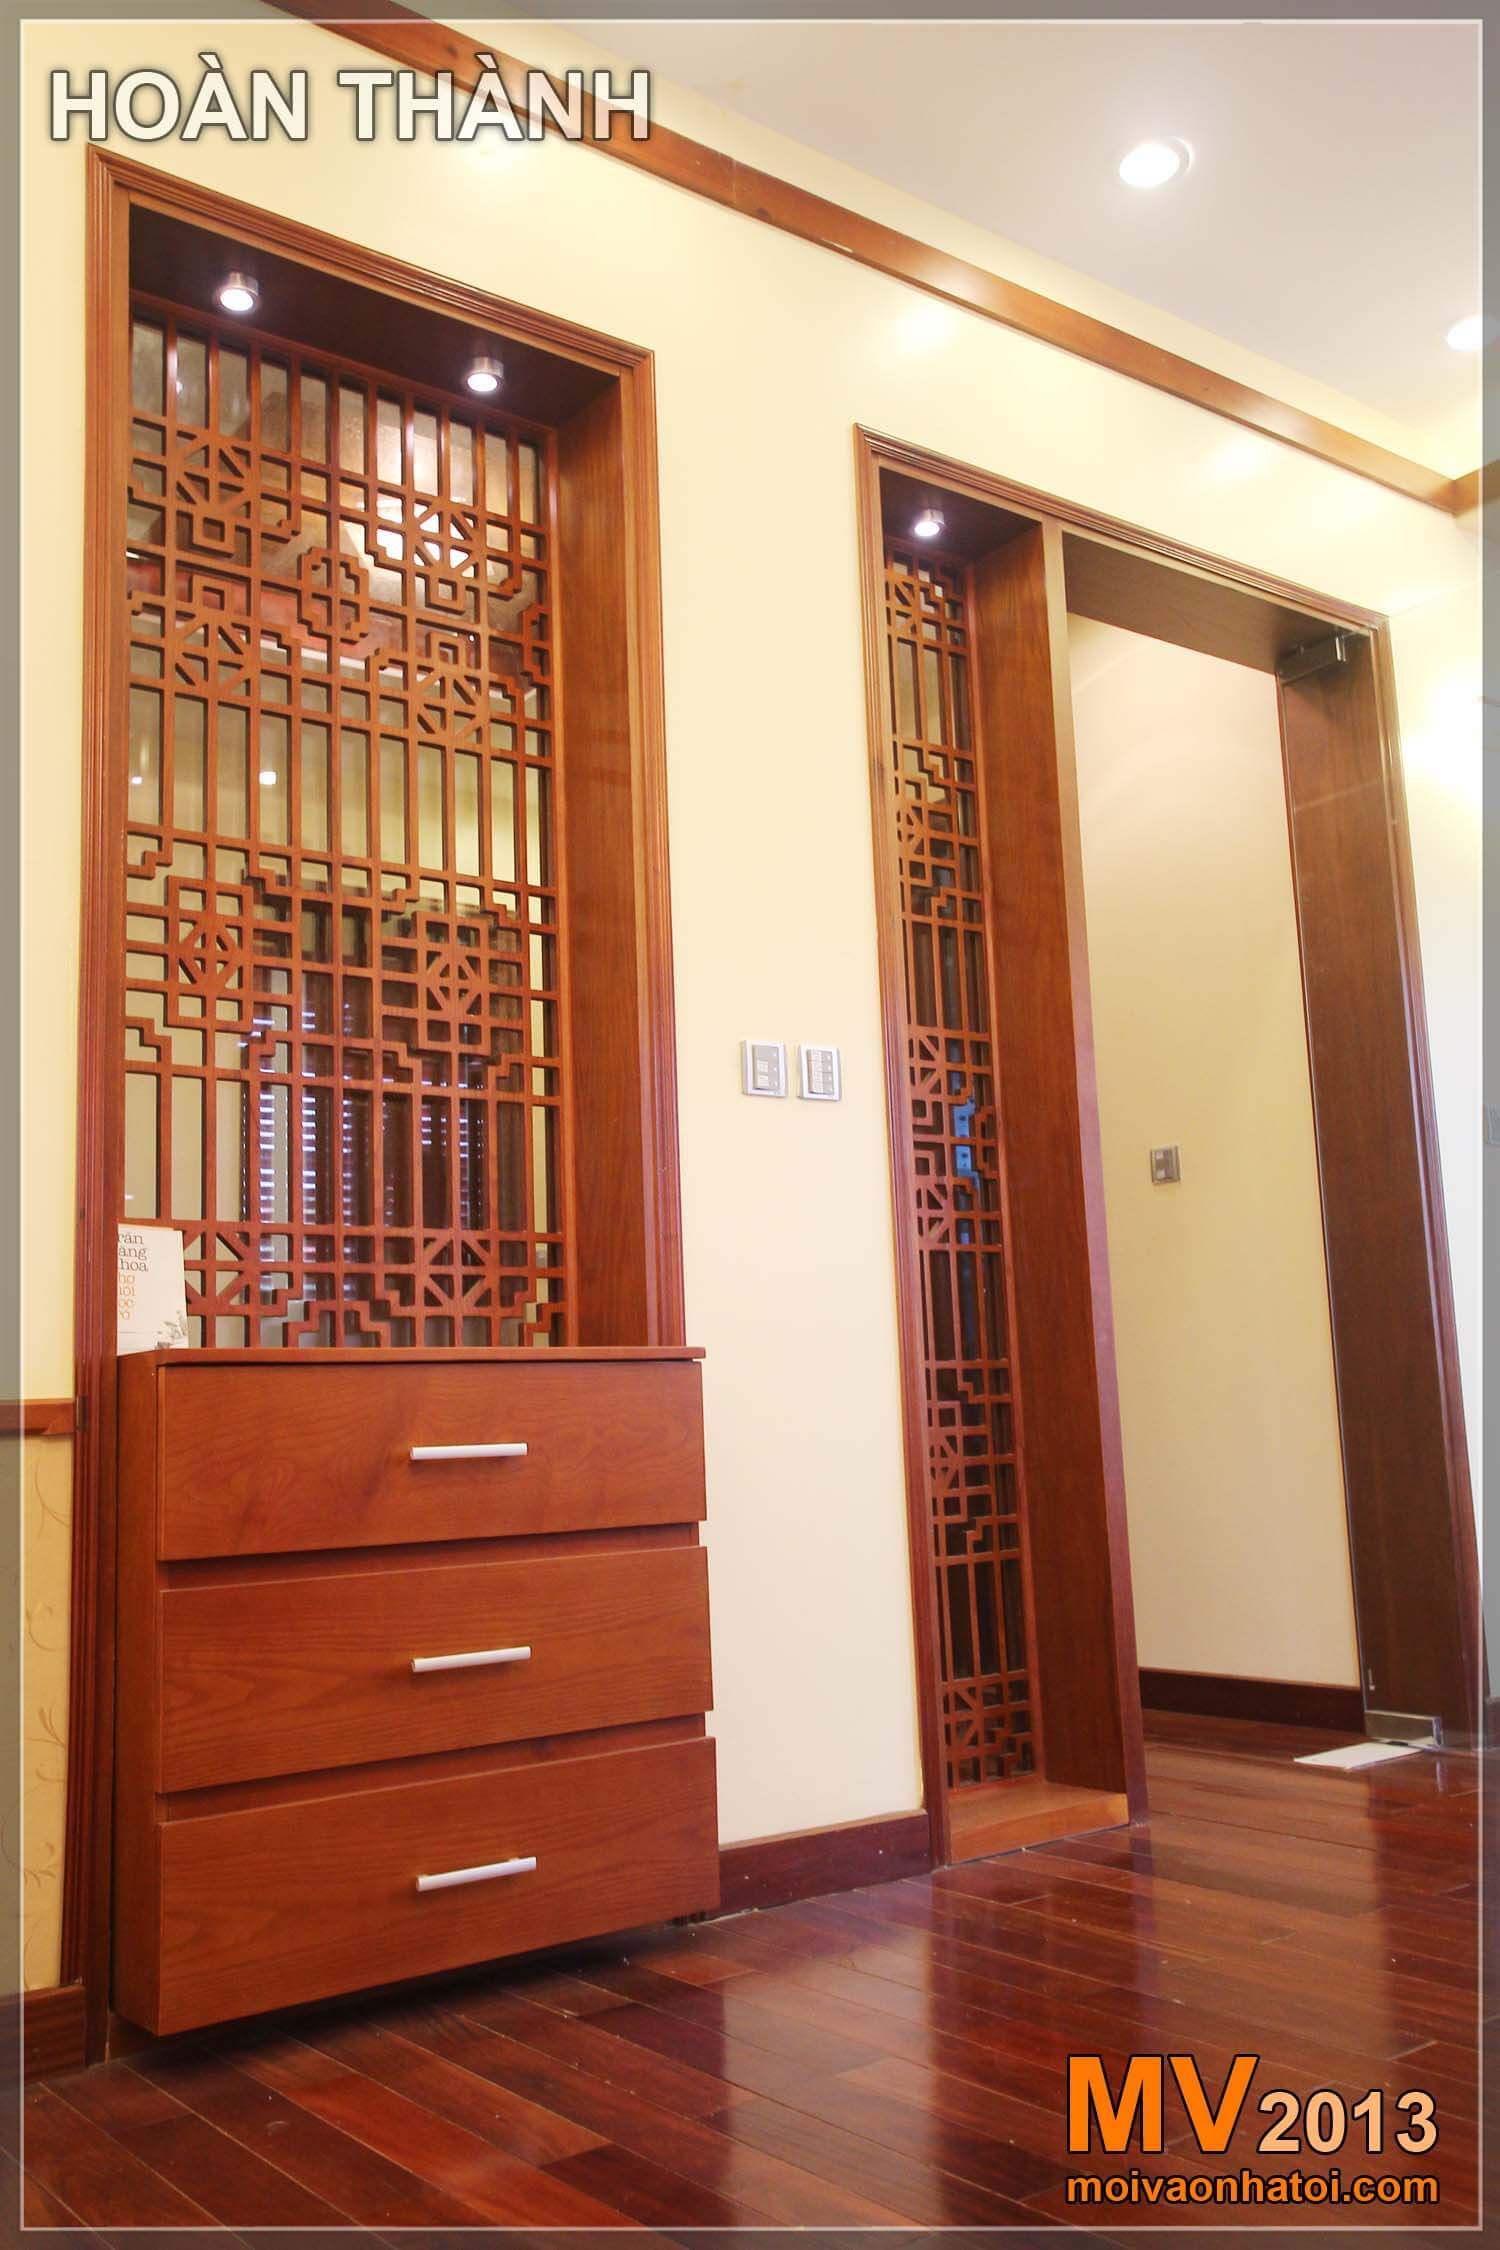 přepážka a dřevěný strop pro vnitřní výzdobu vily